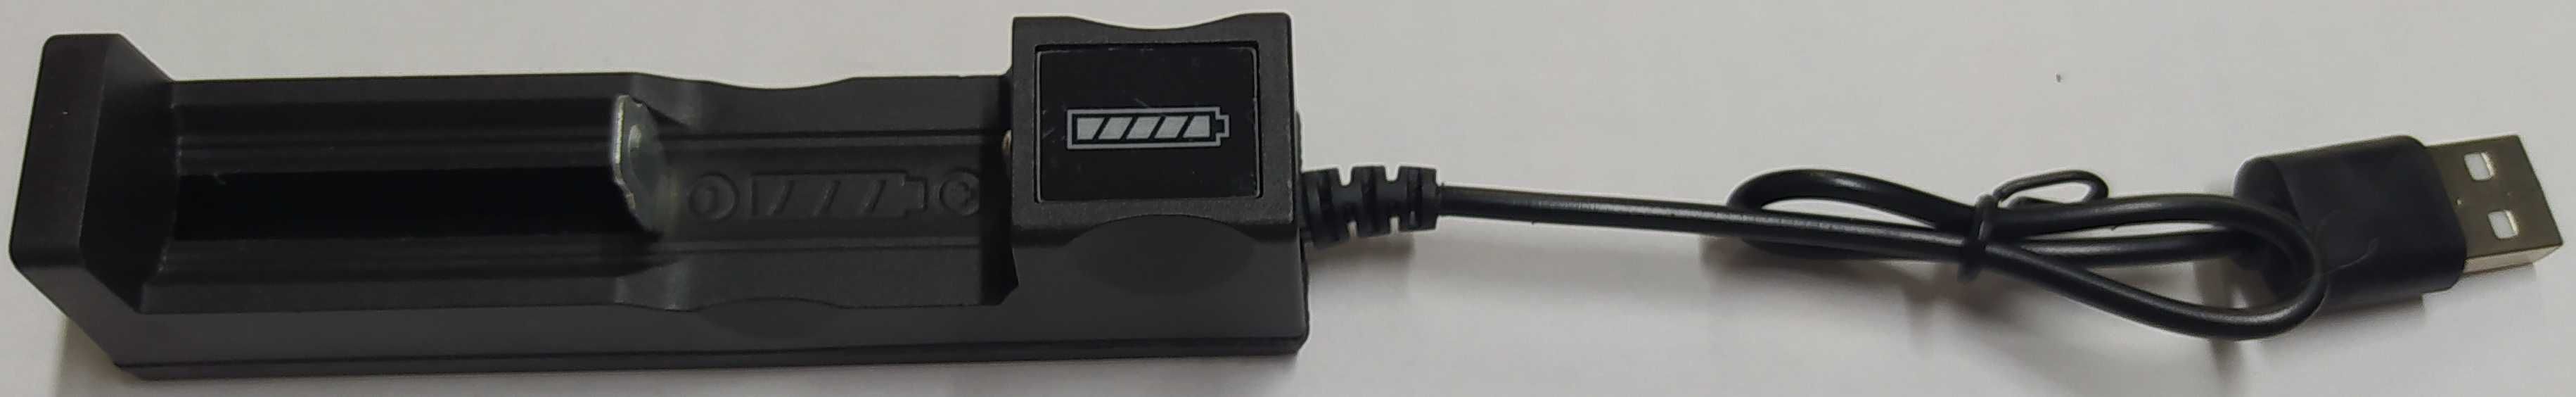 USB зарядка TG-188 для Li-ion аккумуляторов 18650